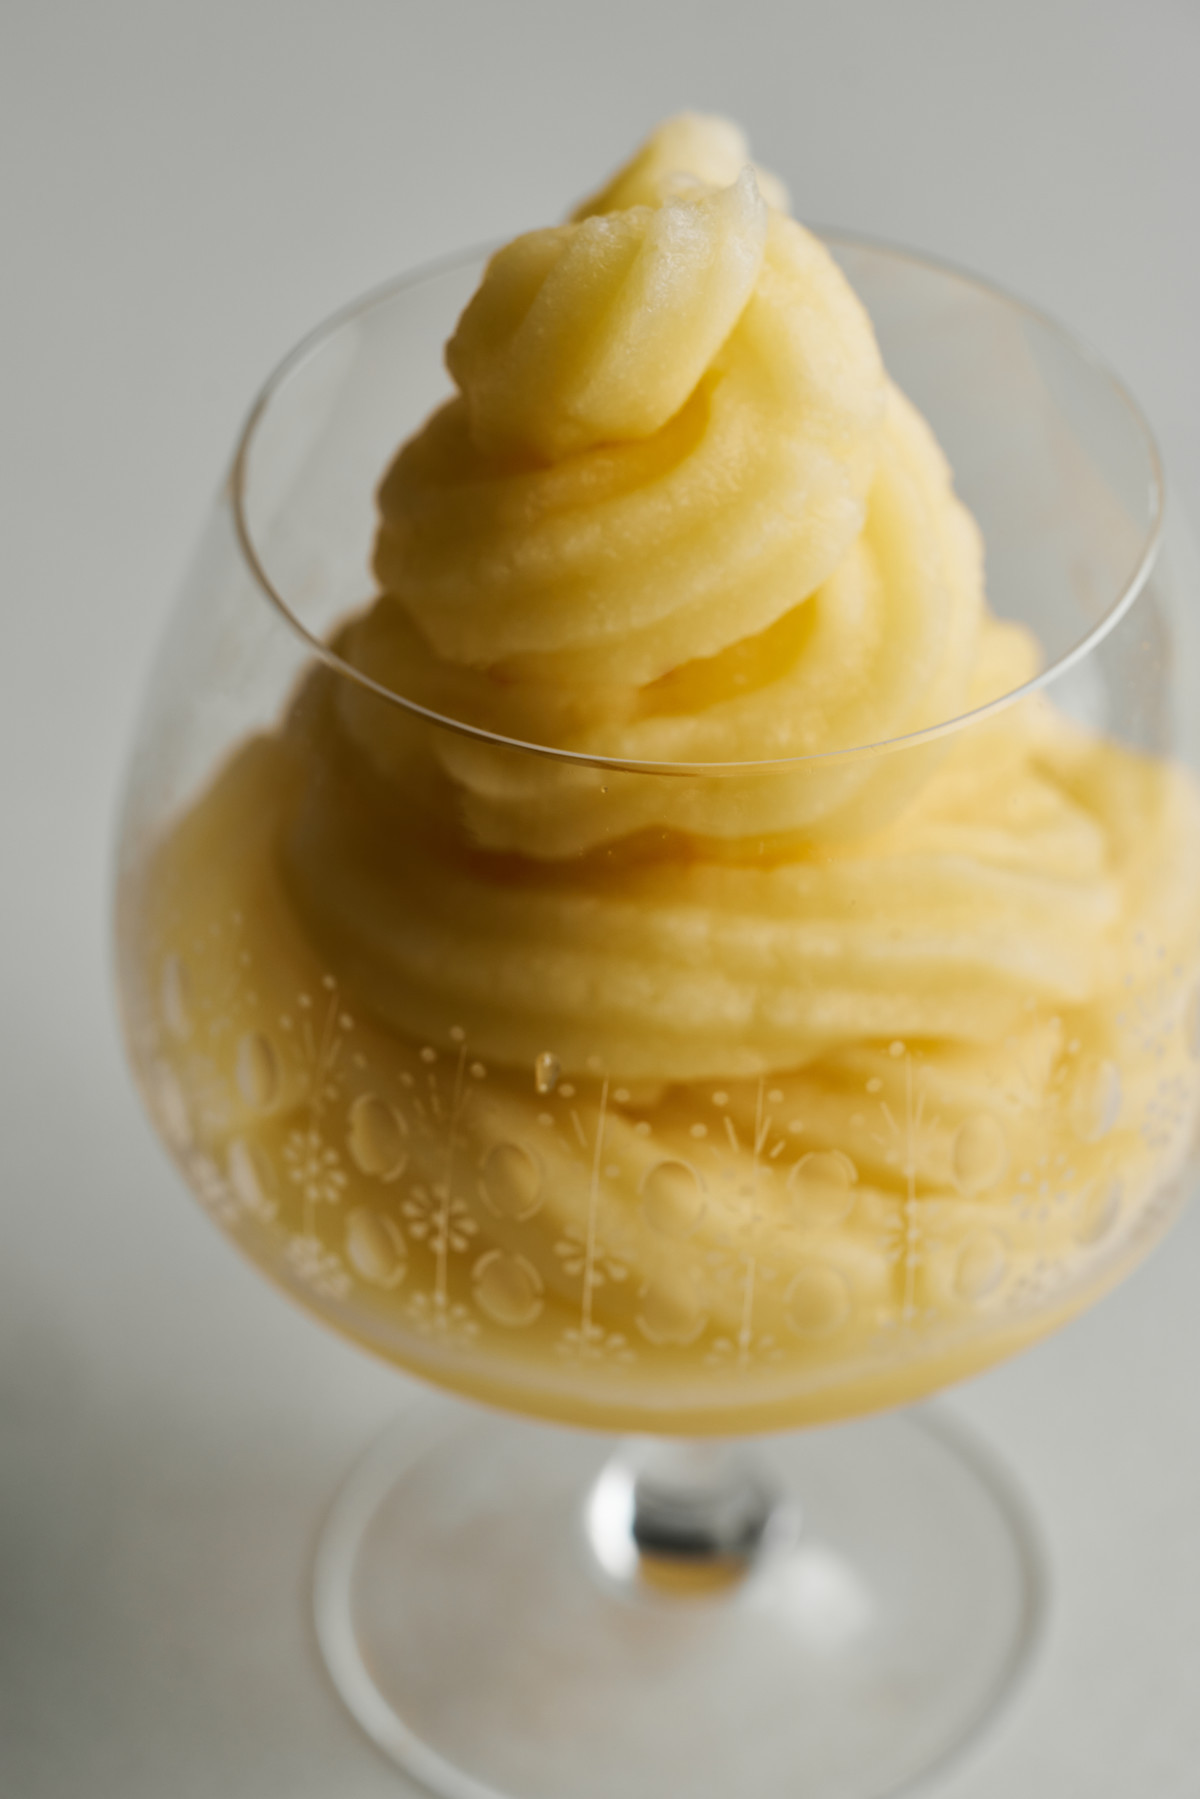 Yellow soft serve in a cognac pedestal glass.